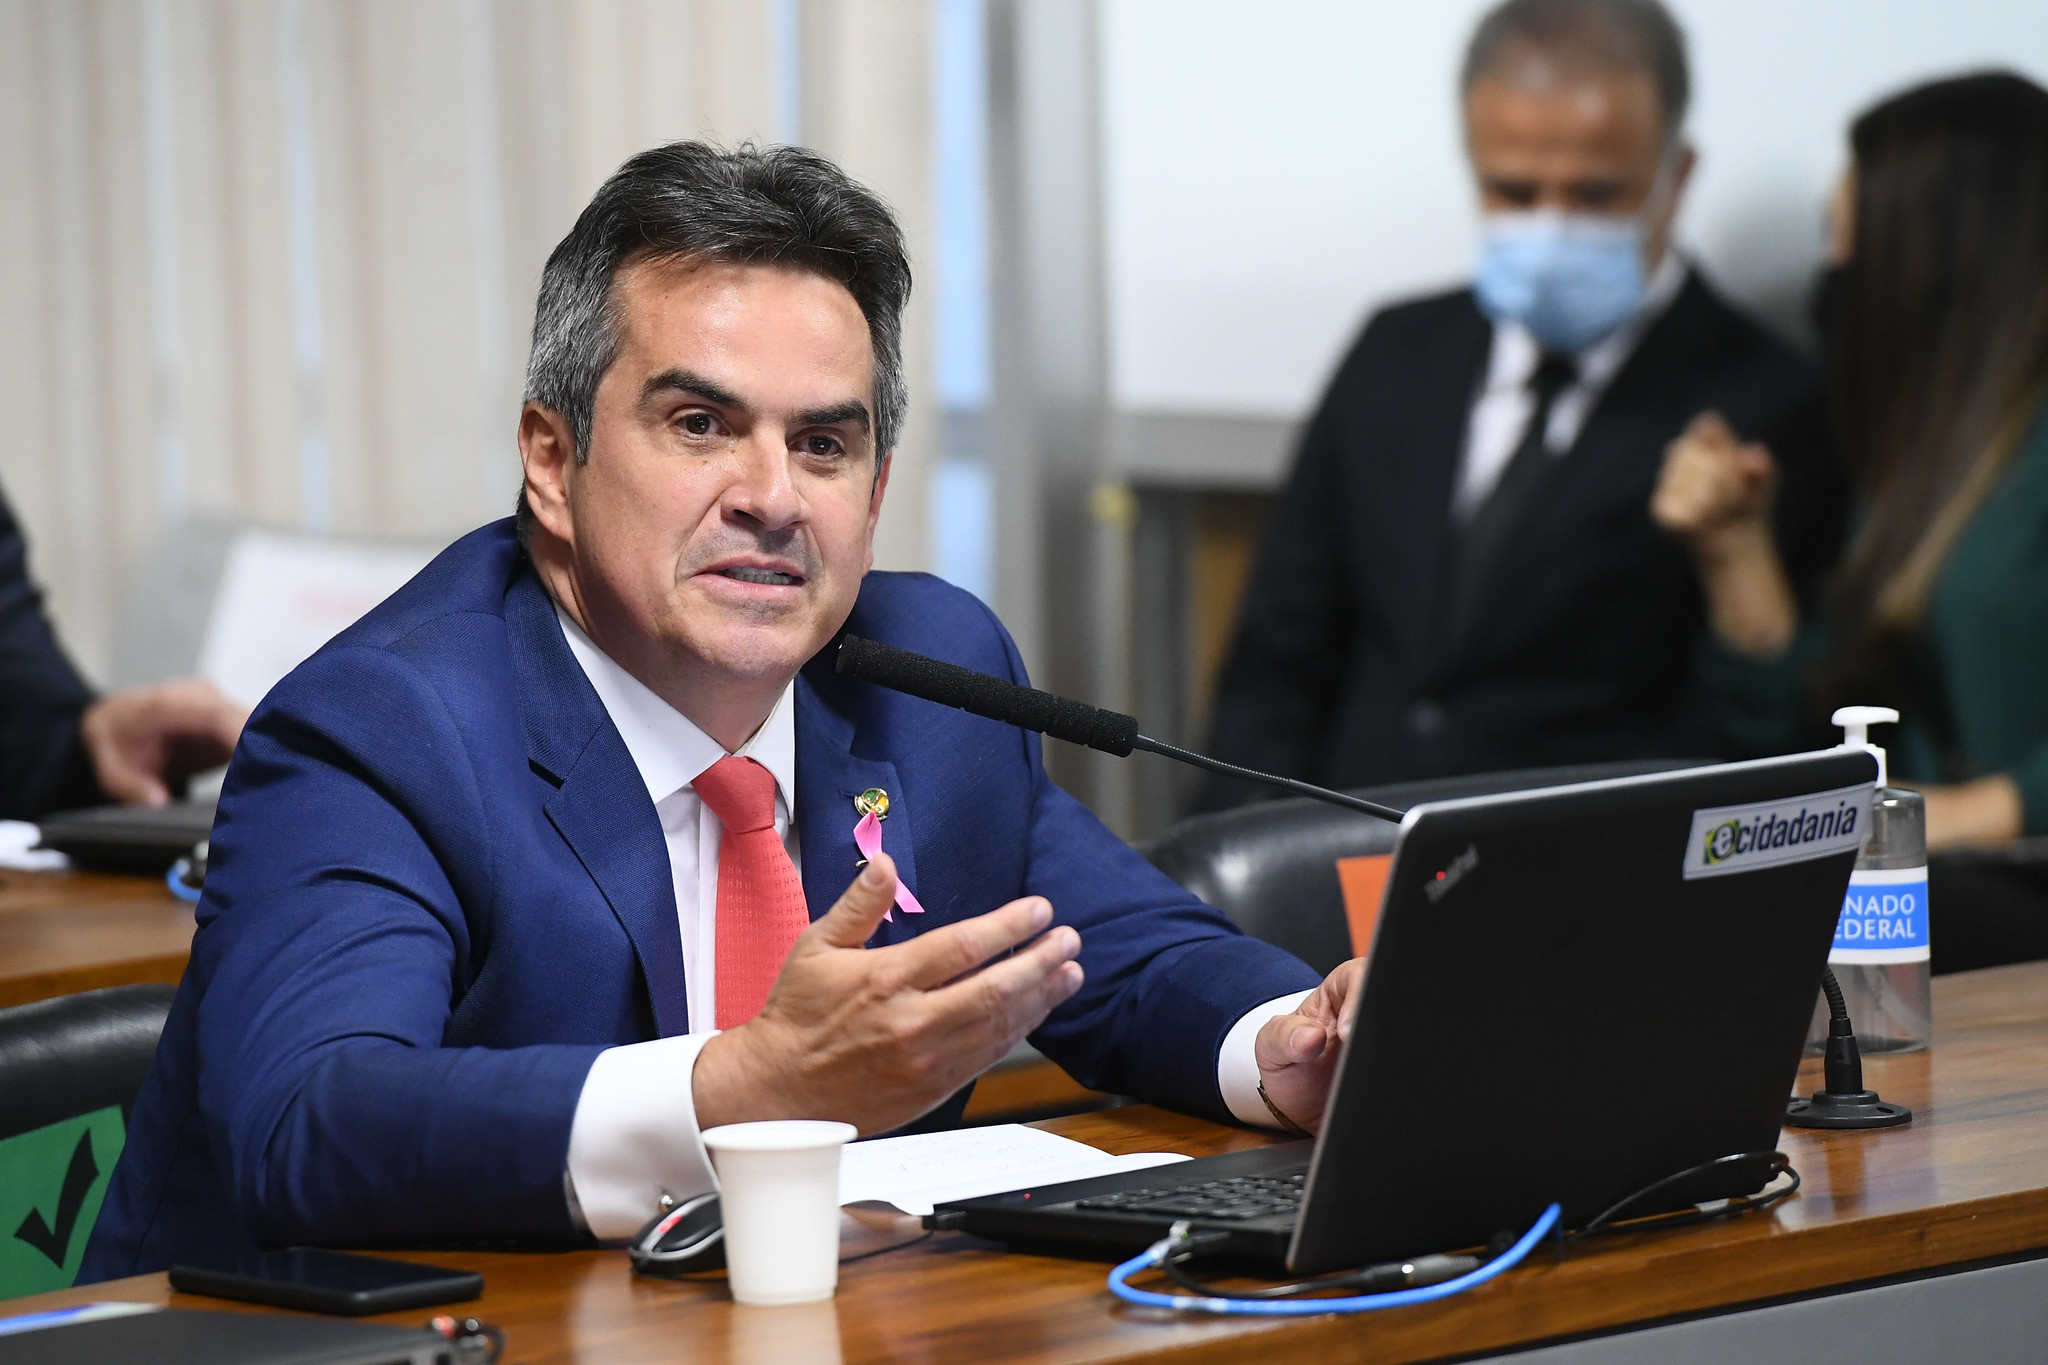 À bancada, em pronunciamento, senador Ciro Nogueira (PP-PI)